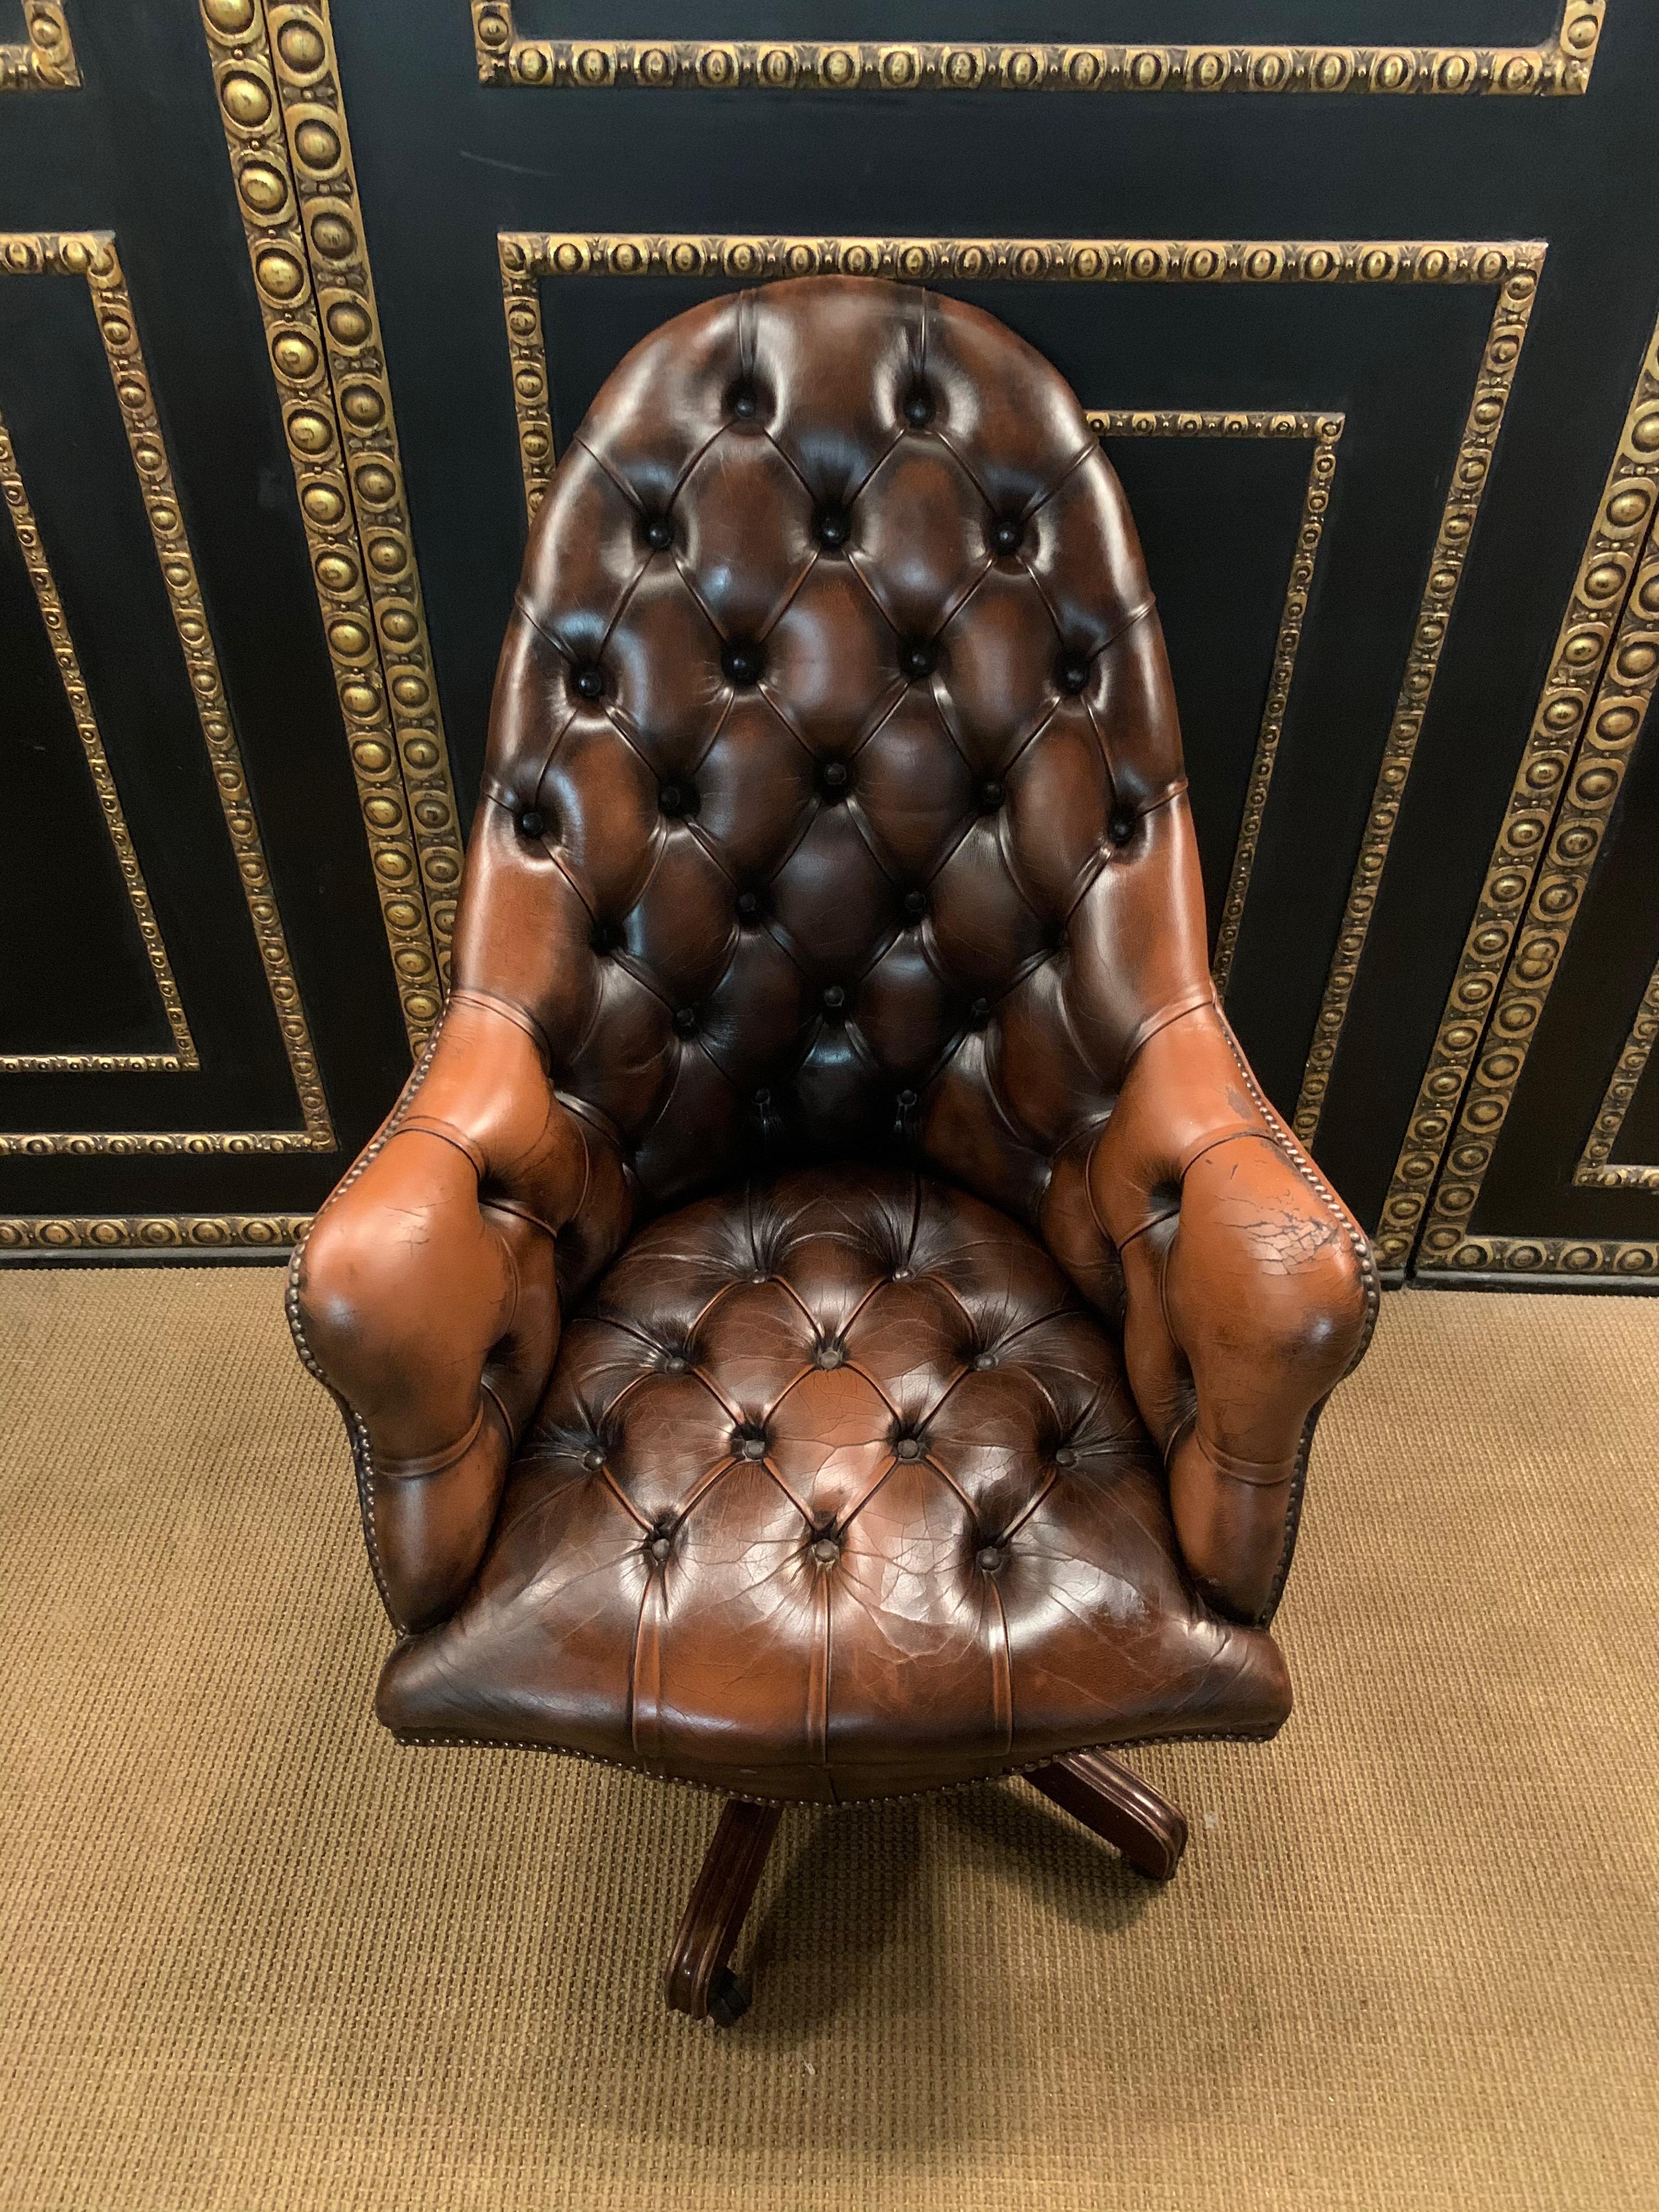 Wir freuen uns, dieses schöne Original Vintage Hand gefärbt Mahagoni braunem Leder Chesterfield getuftet Regisseure Stuhl eine sehr gut aussehende gut gemacht und komfortabel Regisseure Stuhl bieten. Seine Chesterfield geknöpft beide zurück und